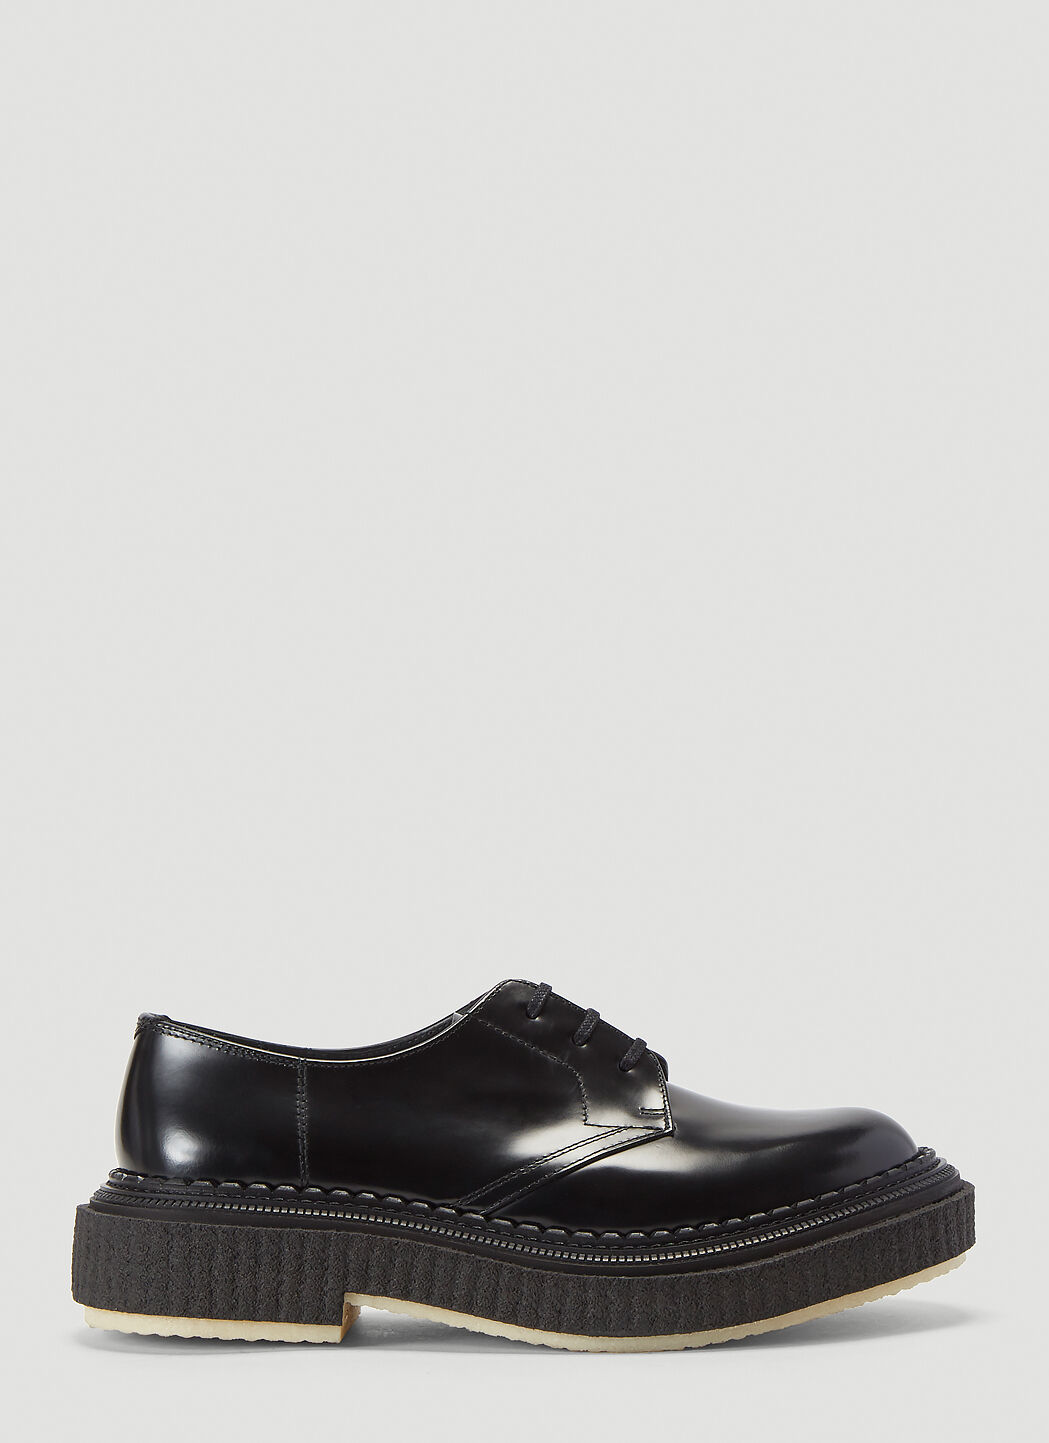 Saint Laurent Type 132 Lace-Up Shoes Black sla0238013